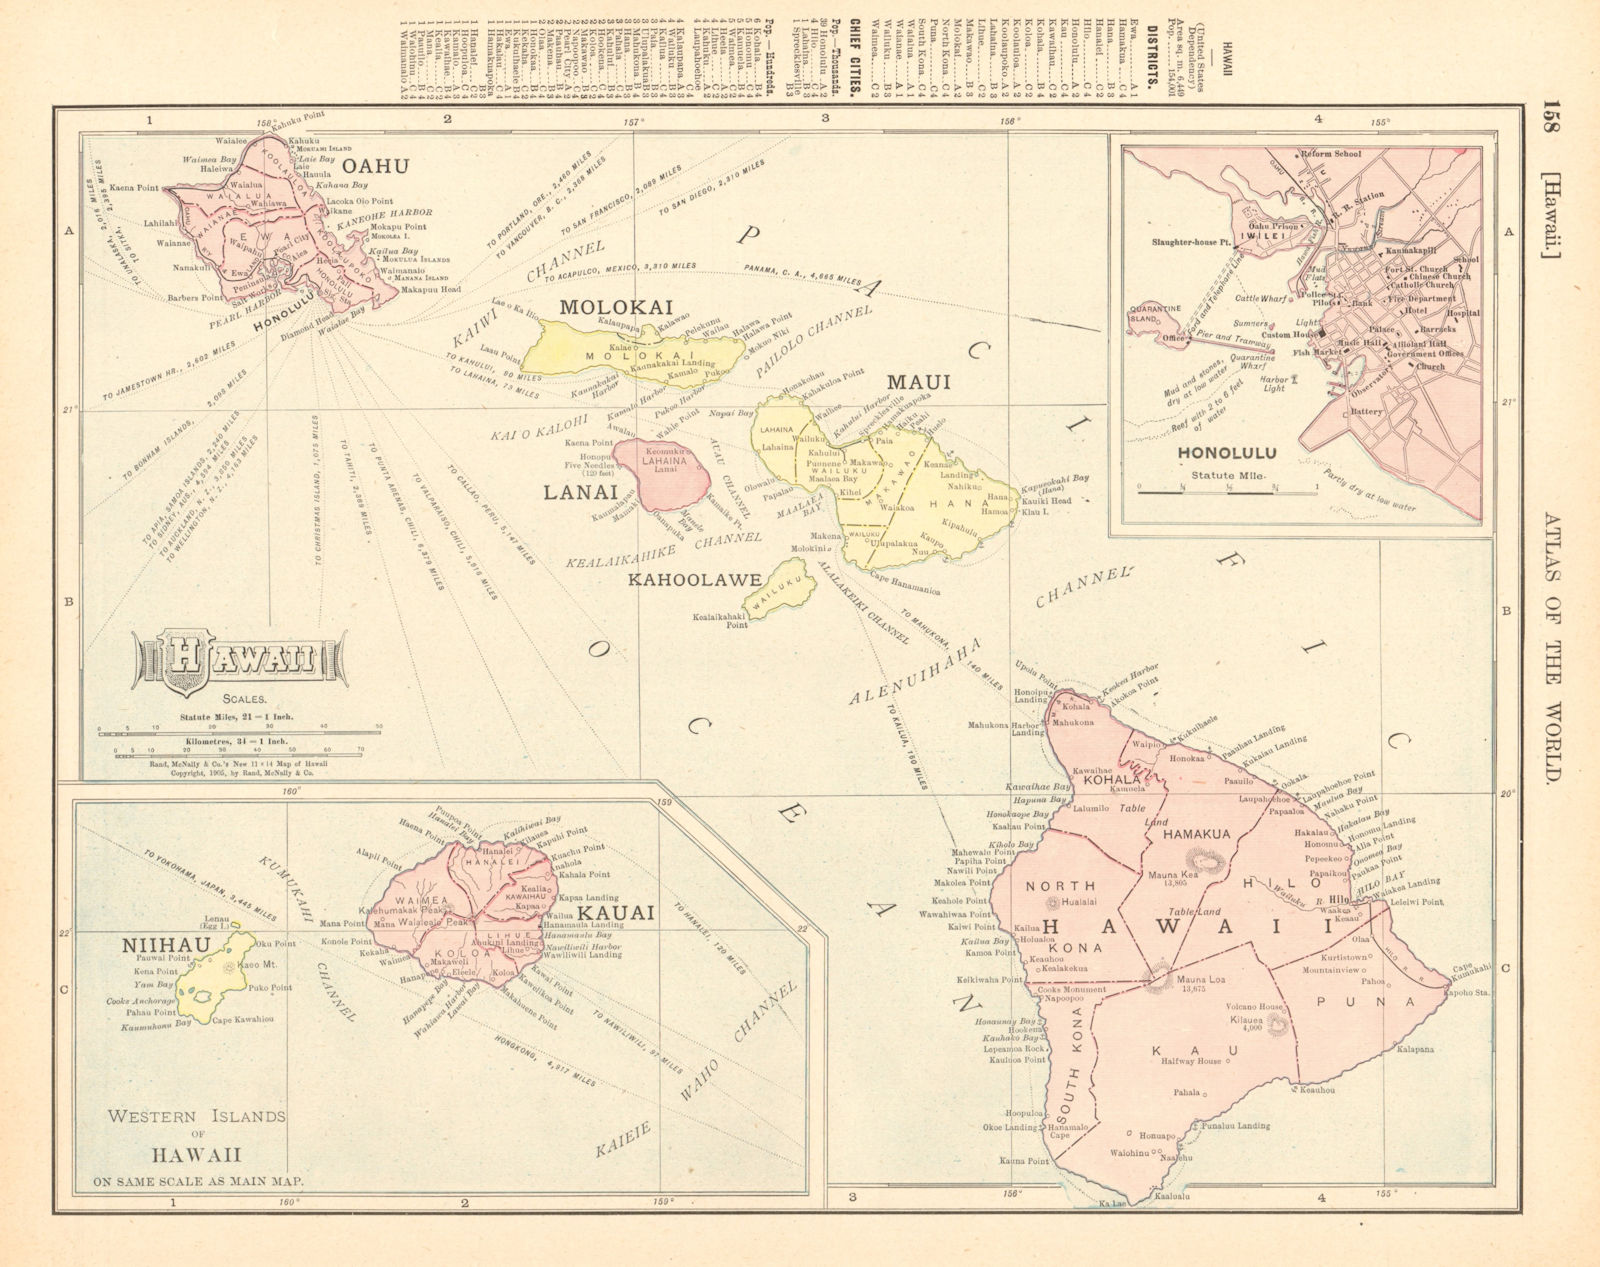 HAWAIIAN ISLANDS. Oahu Lanai Niihau Kauai Maui. Honolulu. RAND MCNALLY 1906 map